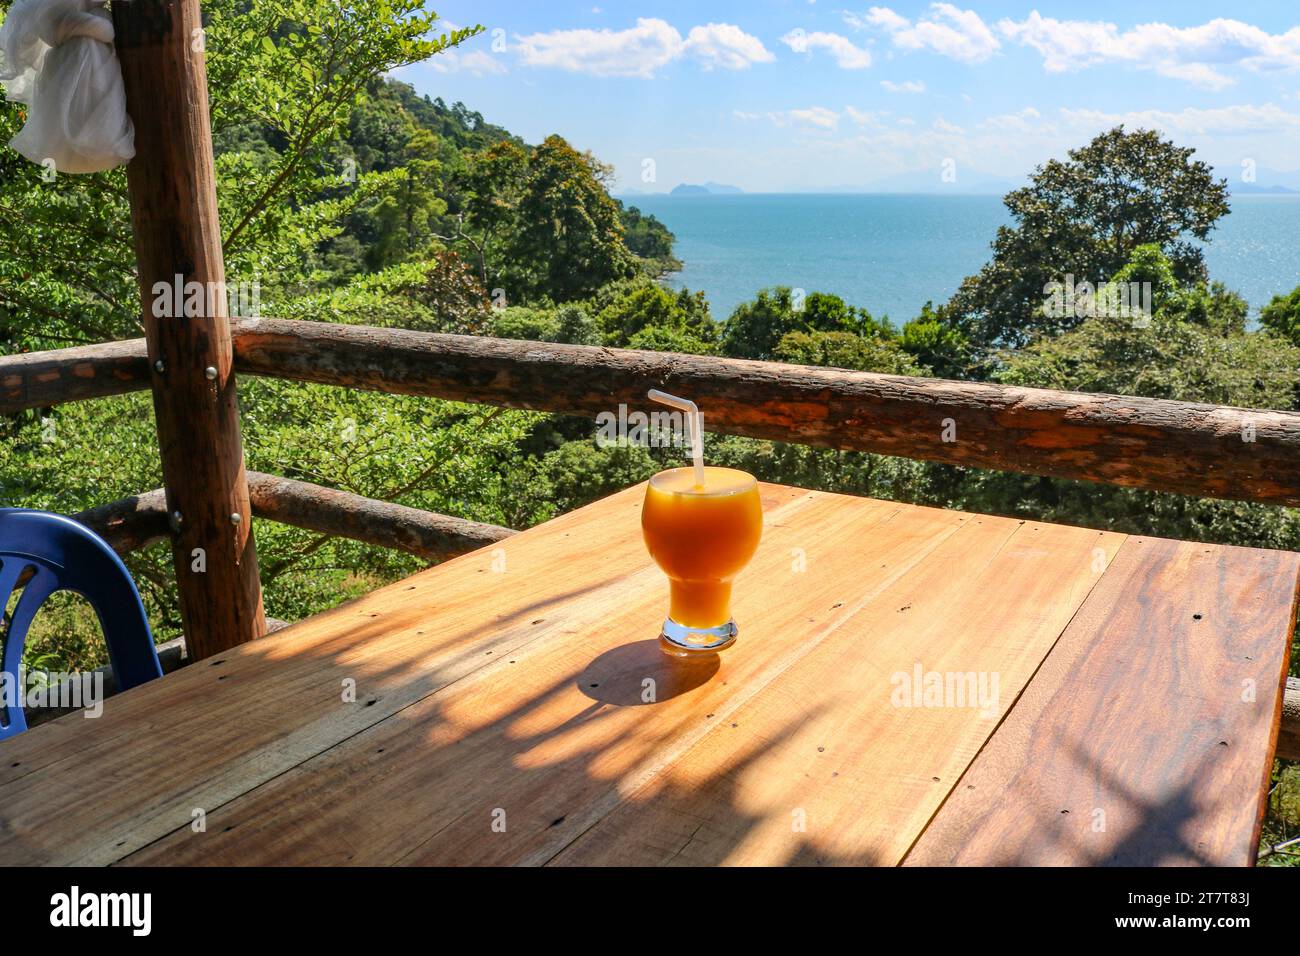 Frullato di mango in una caffetteria affacciata sul mare. Il concetto di relax, vacanza, stile di vita sano, viaggio. Foto Stock